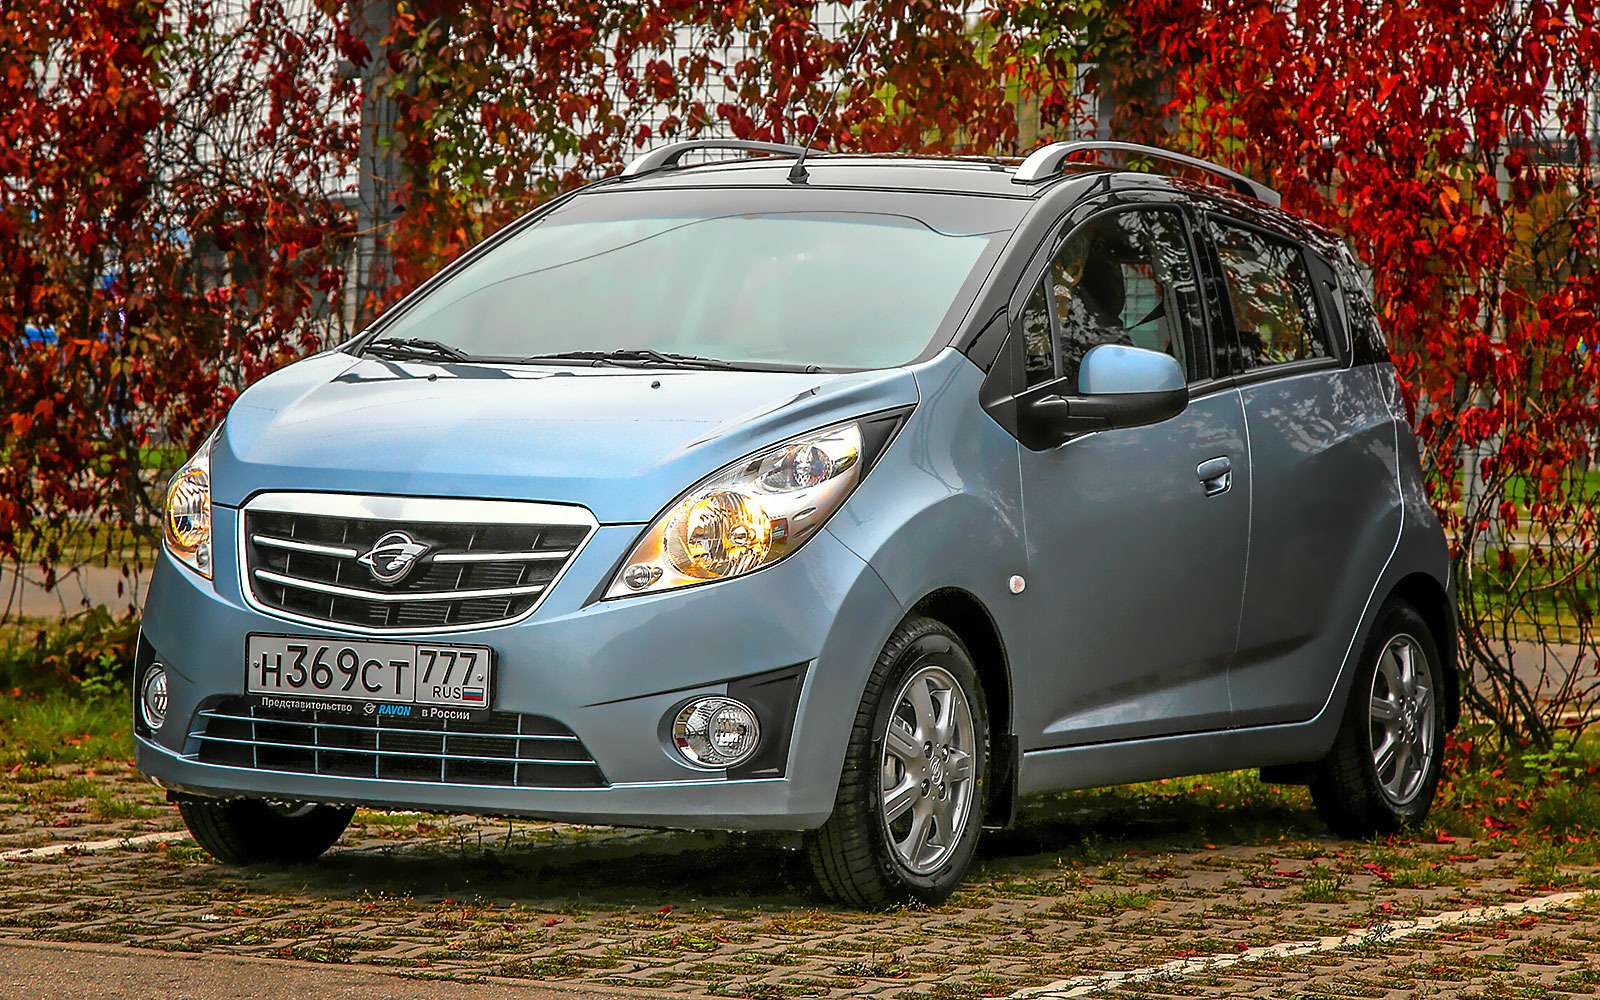 Ravon R2 производства GM Uzbekistan предлагается на российском рынке исключительно с автоматической коробкой передач по цене от 409 тысяч рублей в зависимости от набора опций.